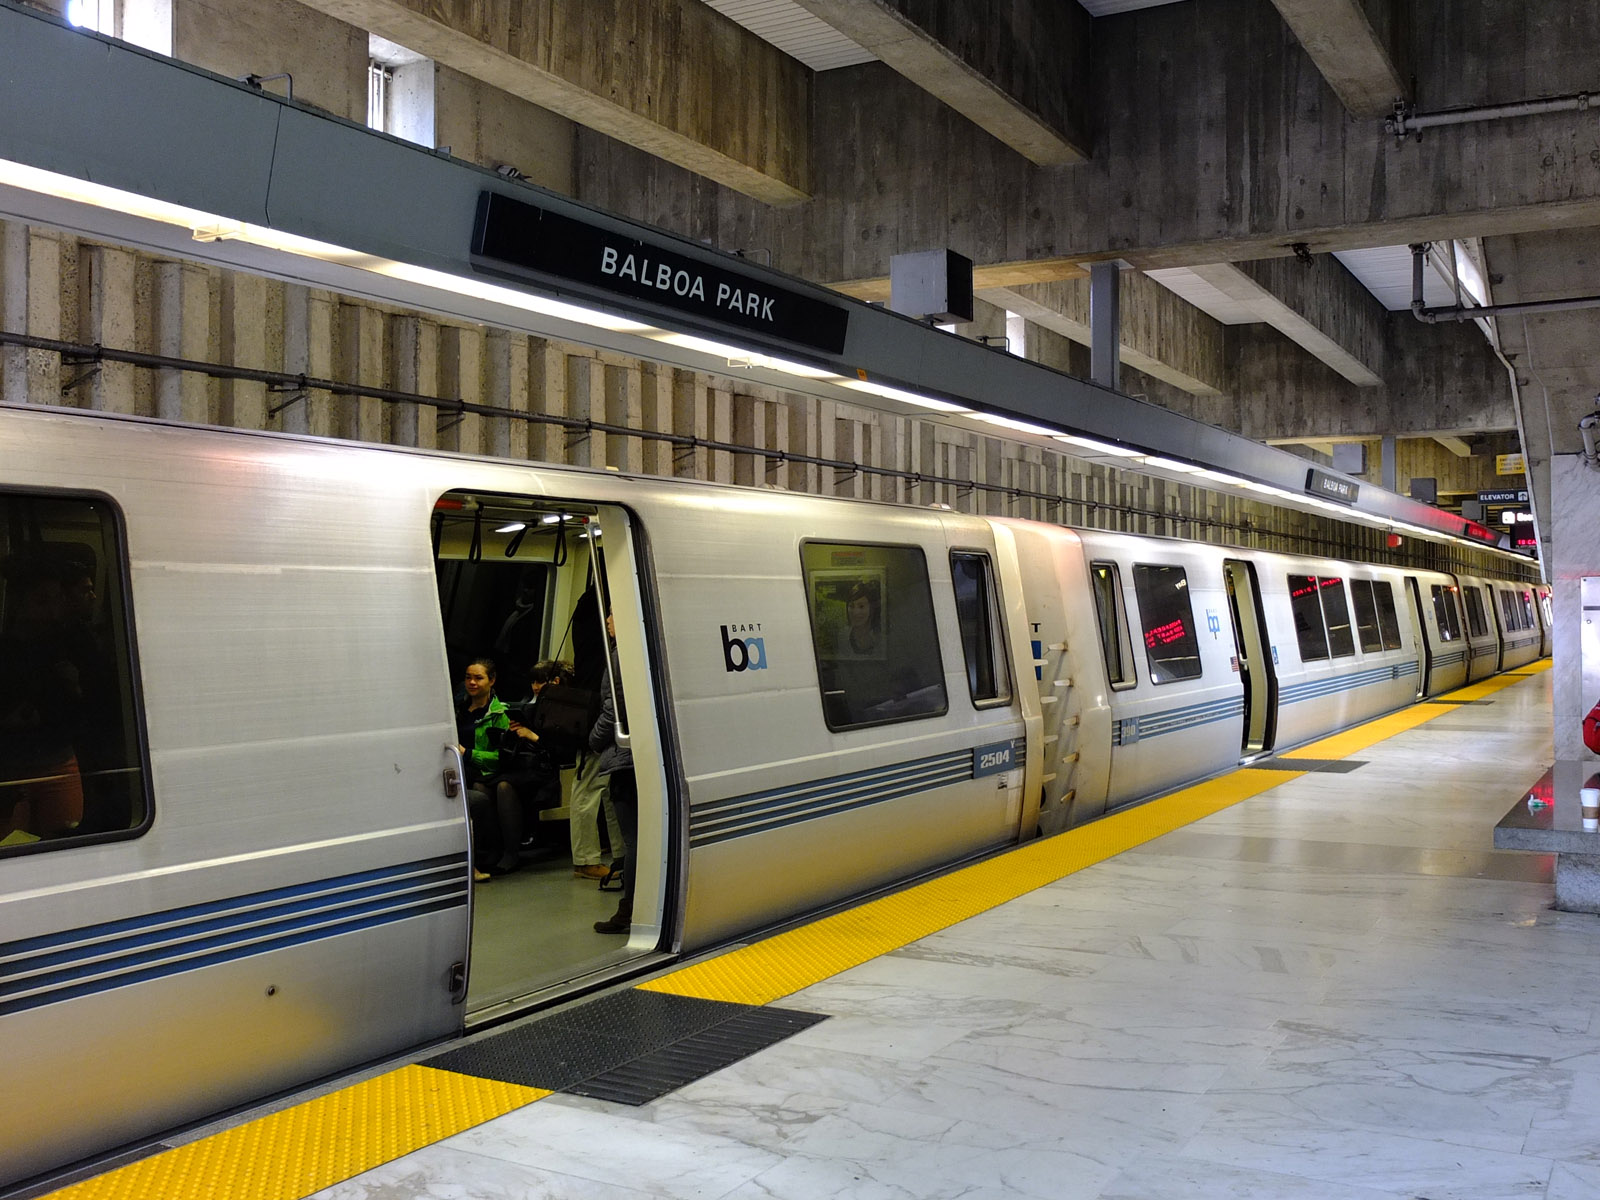 Plano de Metro de San Francisco ¡Fotos y Guía Actualizada! 【2020】